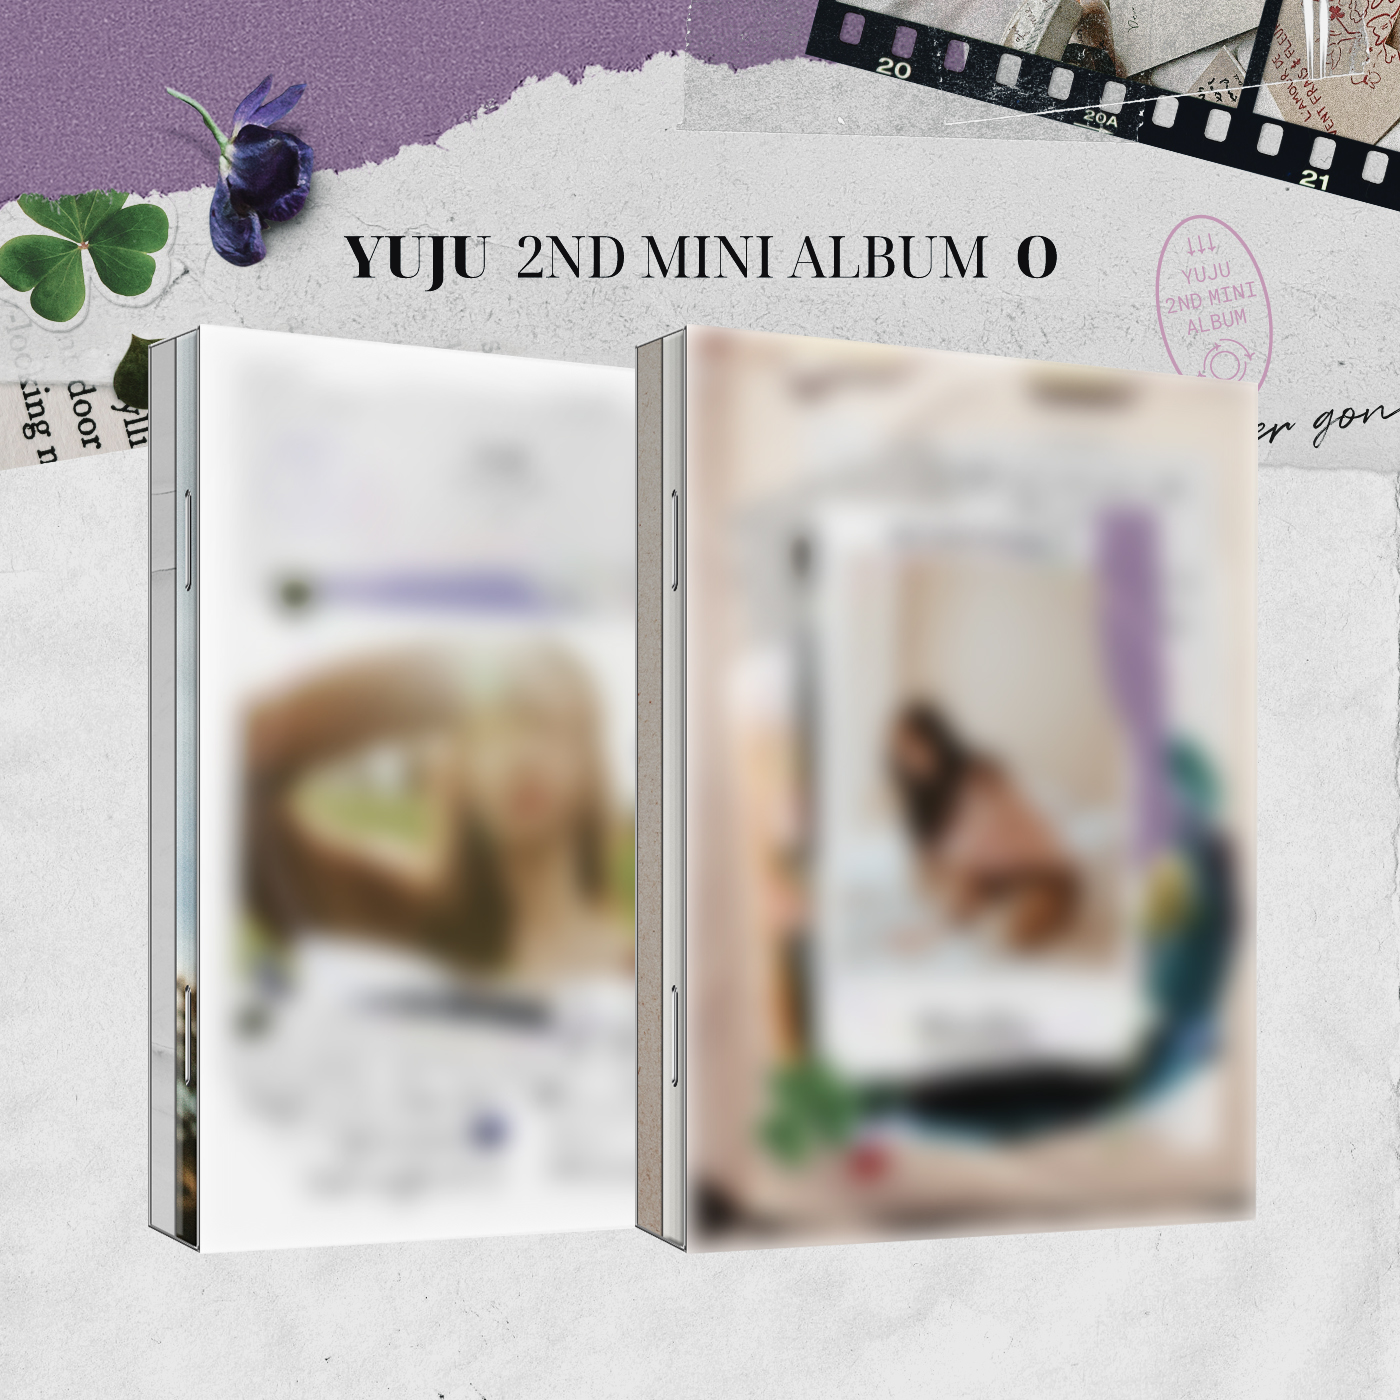 [全款 裸专][2CD 套装] YUJU - 迷你2辑 [O] (A Ver. + B Ver.)_崔俞娜全能站